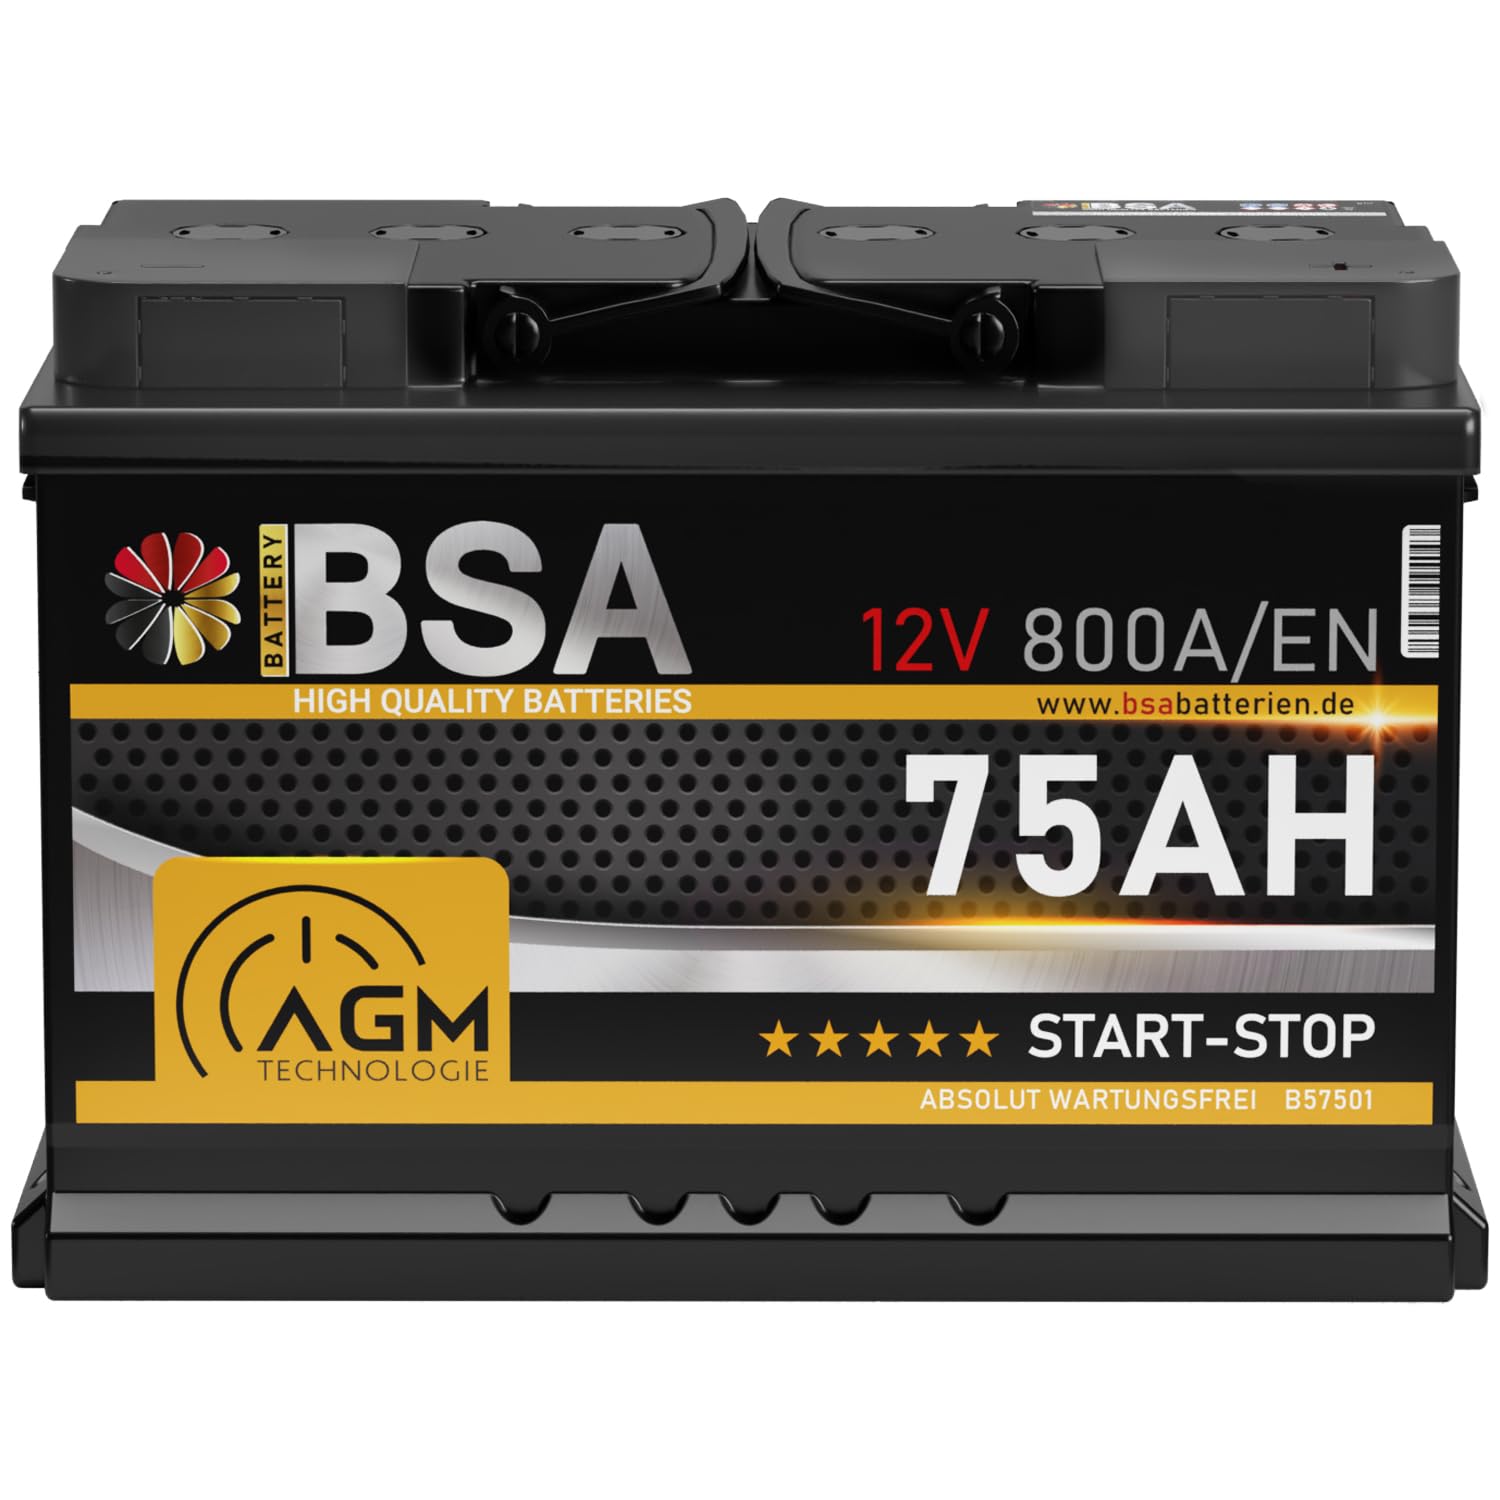 BSA AGM Batterie 75Ah 12V 800A/EN Start-Stop Batterie Autobatterie VRLA statt 70Ah